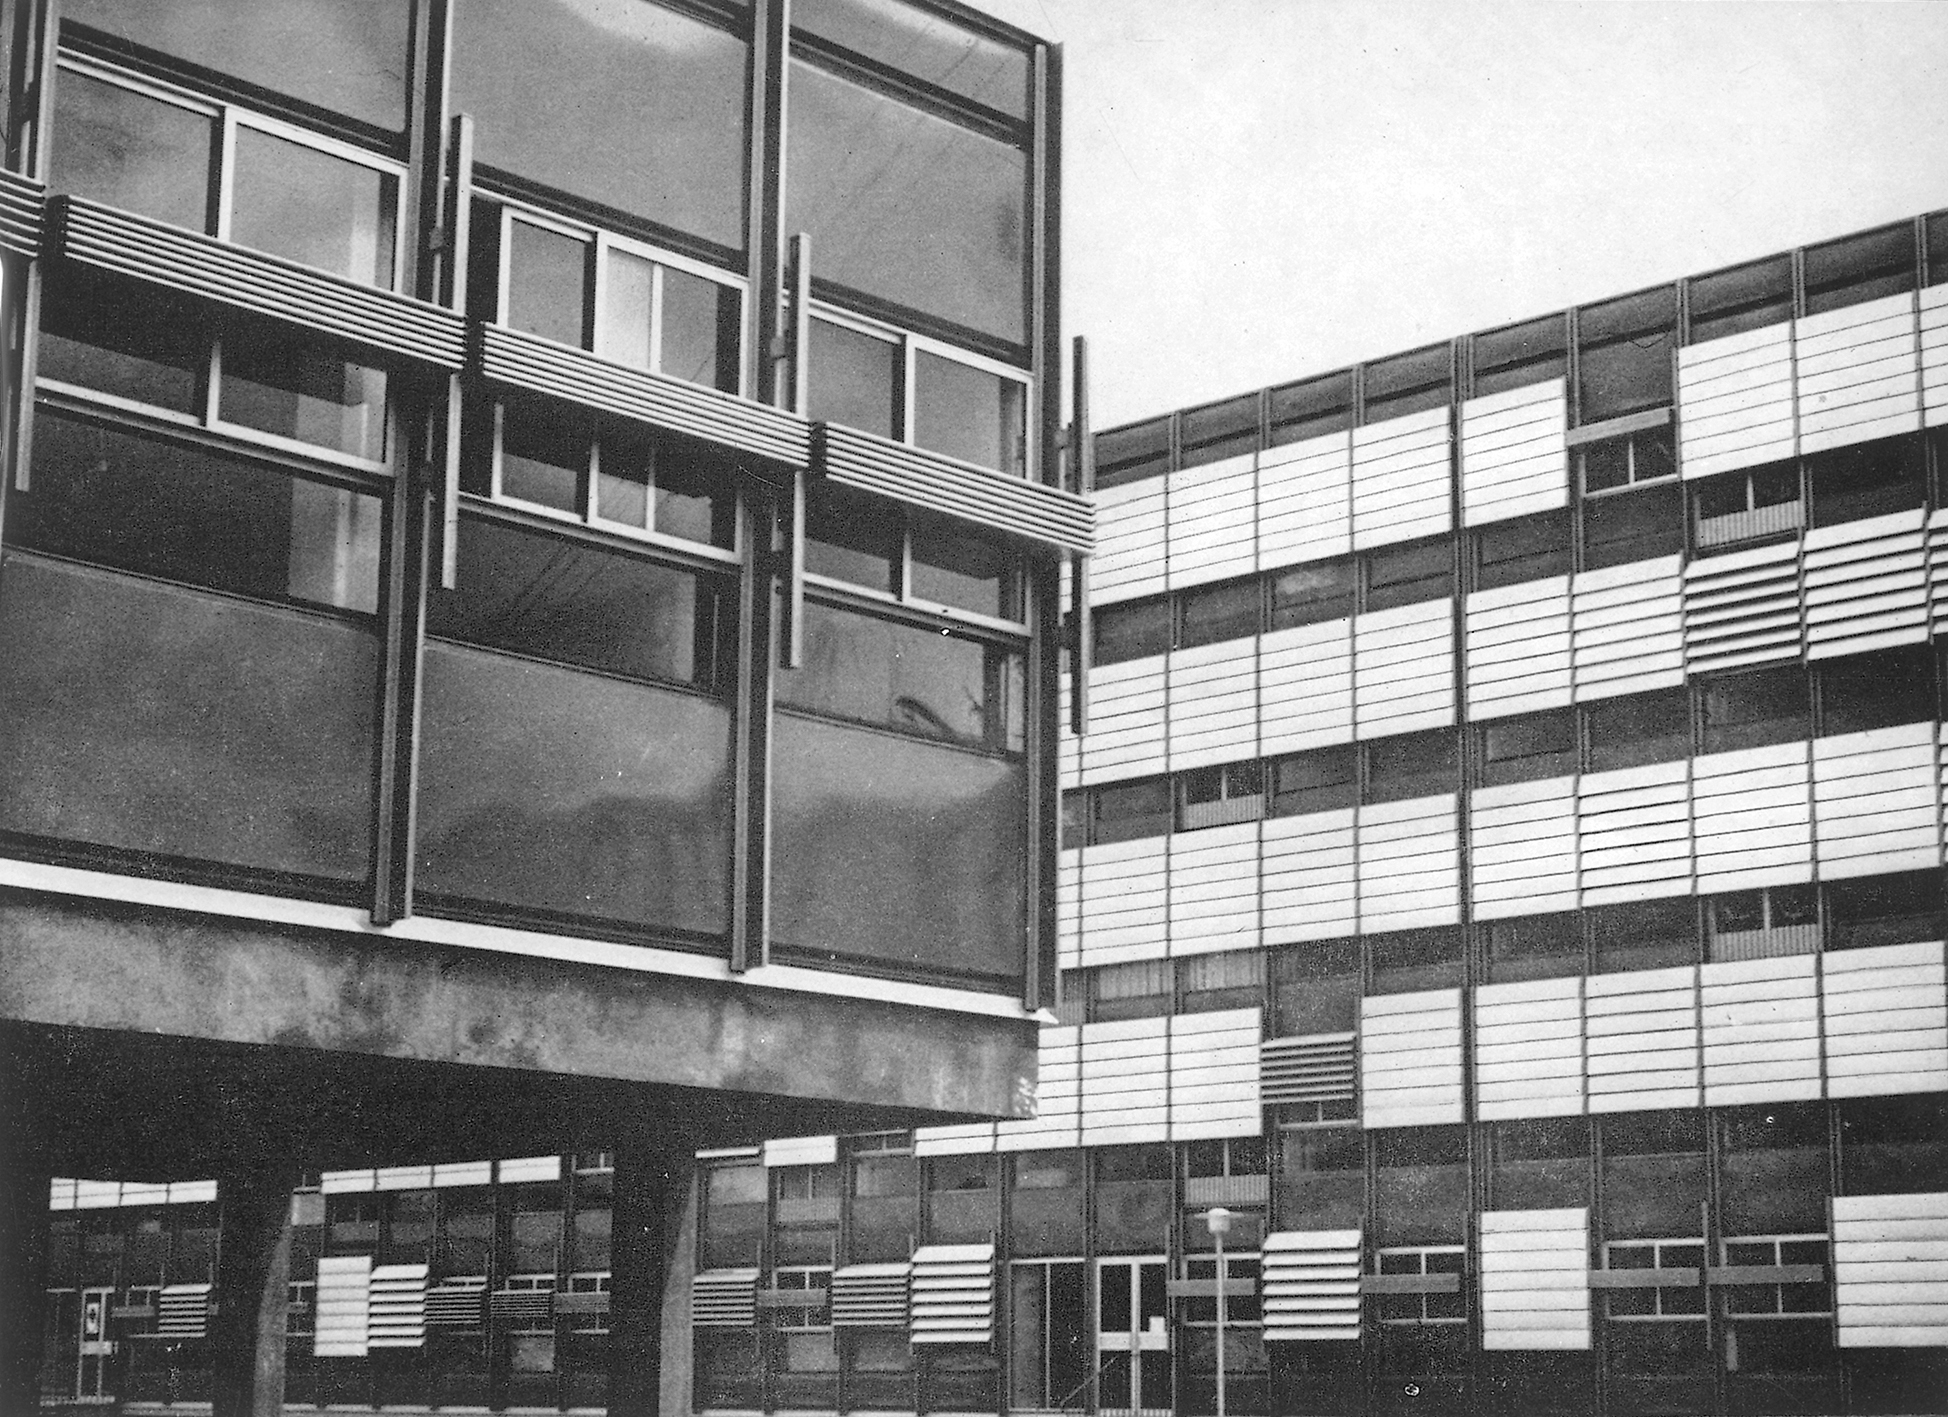 La Dullague school complex, Béziers (architects D. Badani, P. Roux-Dorlut, 1964). Adjustable sun shutter facade panels designed by Jean Prouvé, c. 1965.